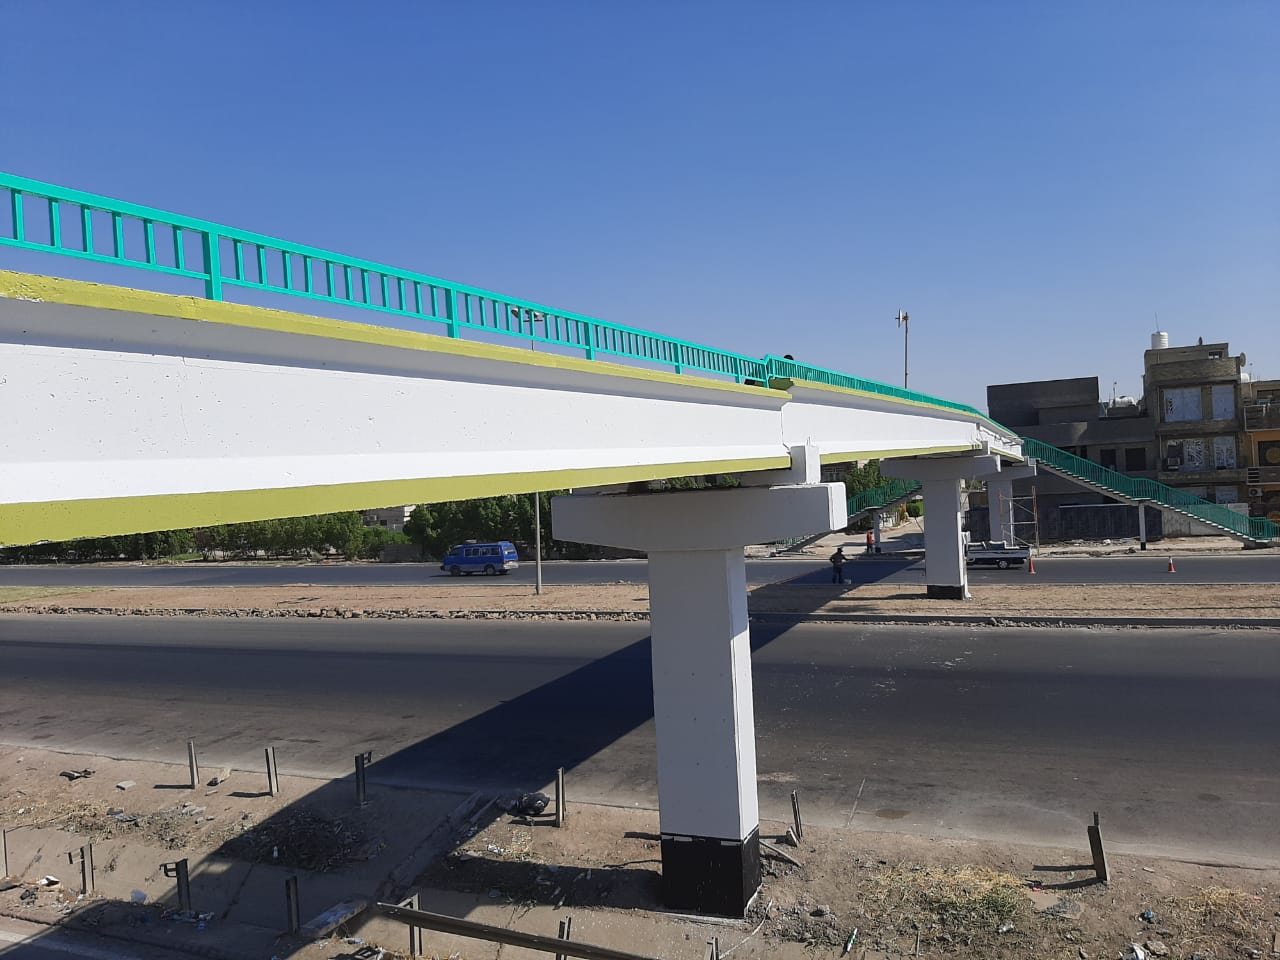 بغداد تعيد جسوراً إلى الخدمة بعد اغلاق دام 17 عاماً